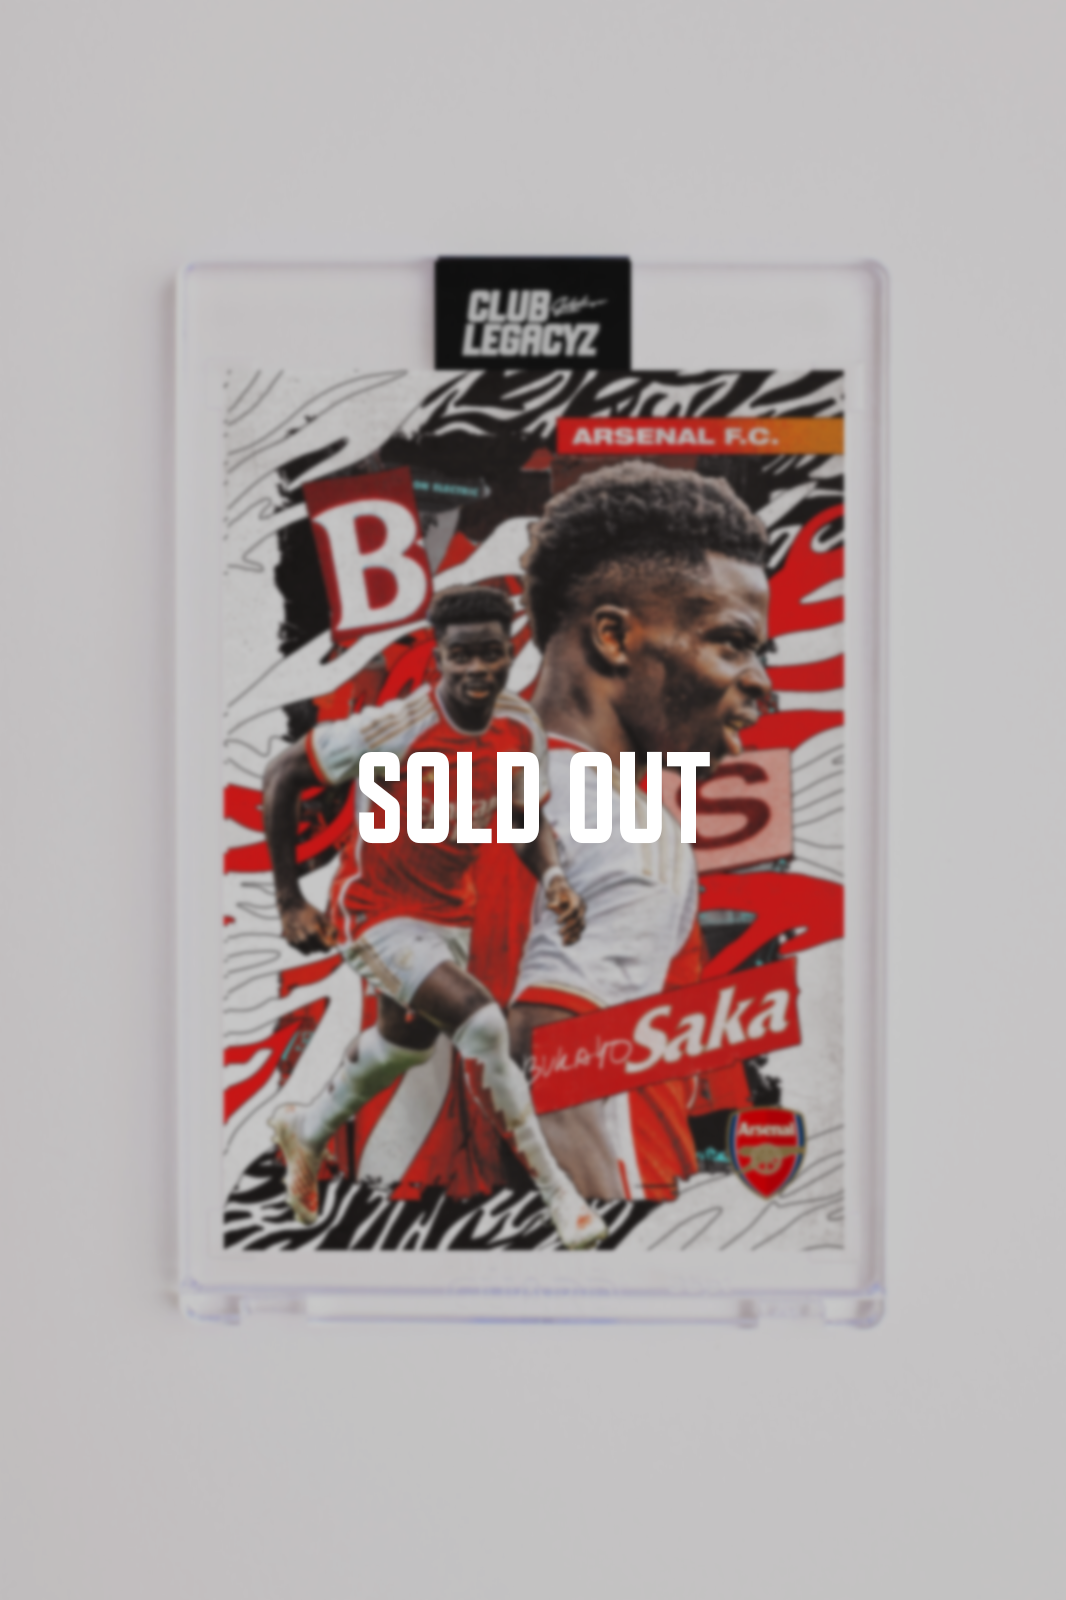 Arsenal FC - Icon Bukayo Saka 50 ejemplares